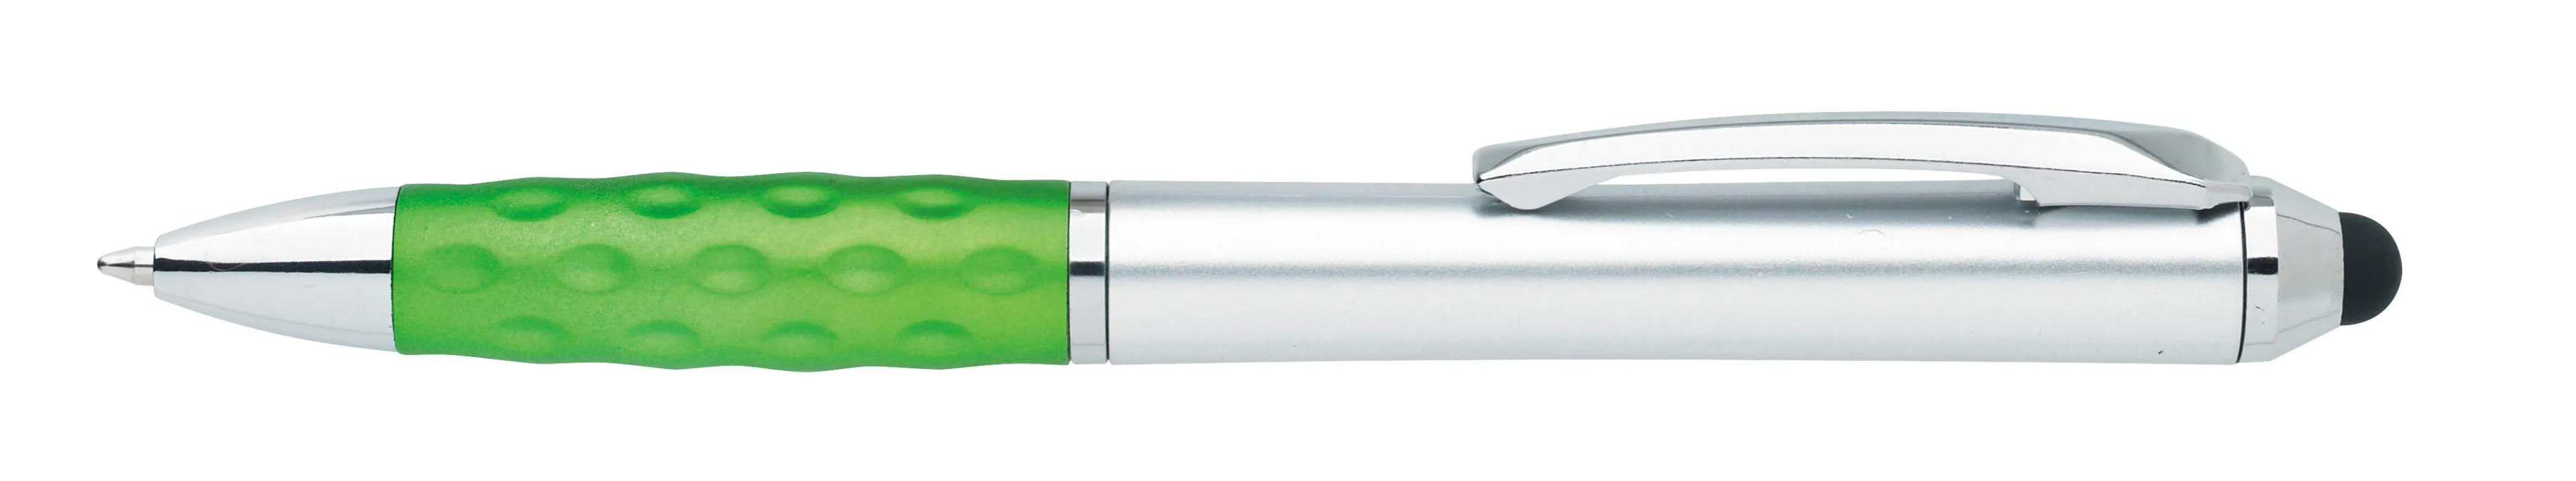 Tev Silver Stylus Pen 8 of 55